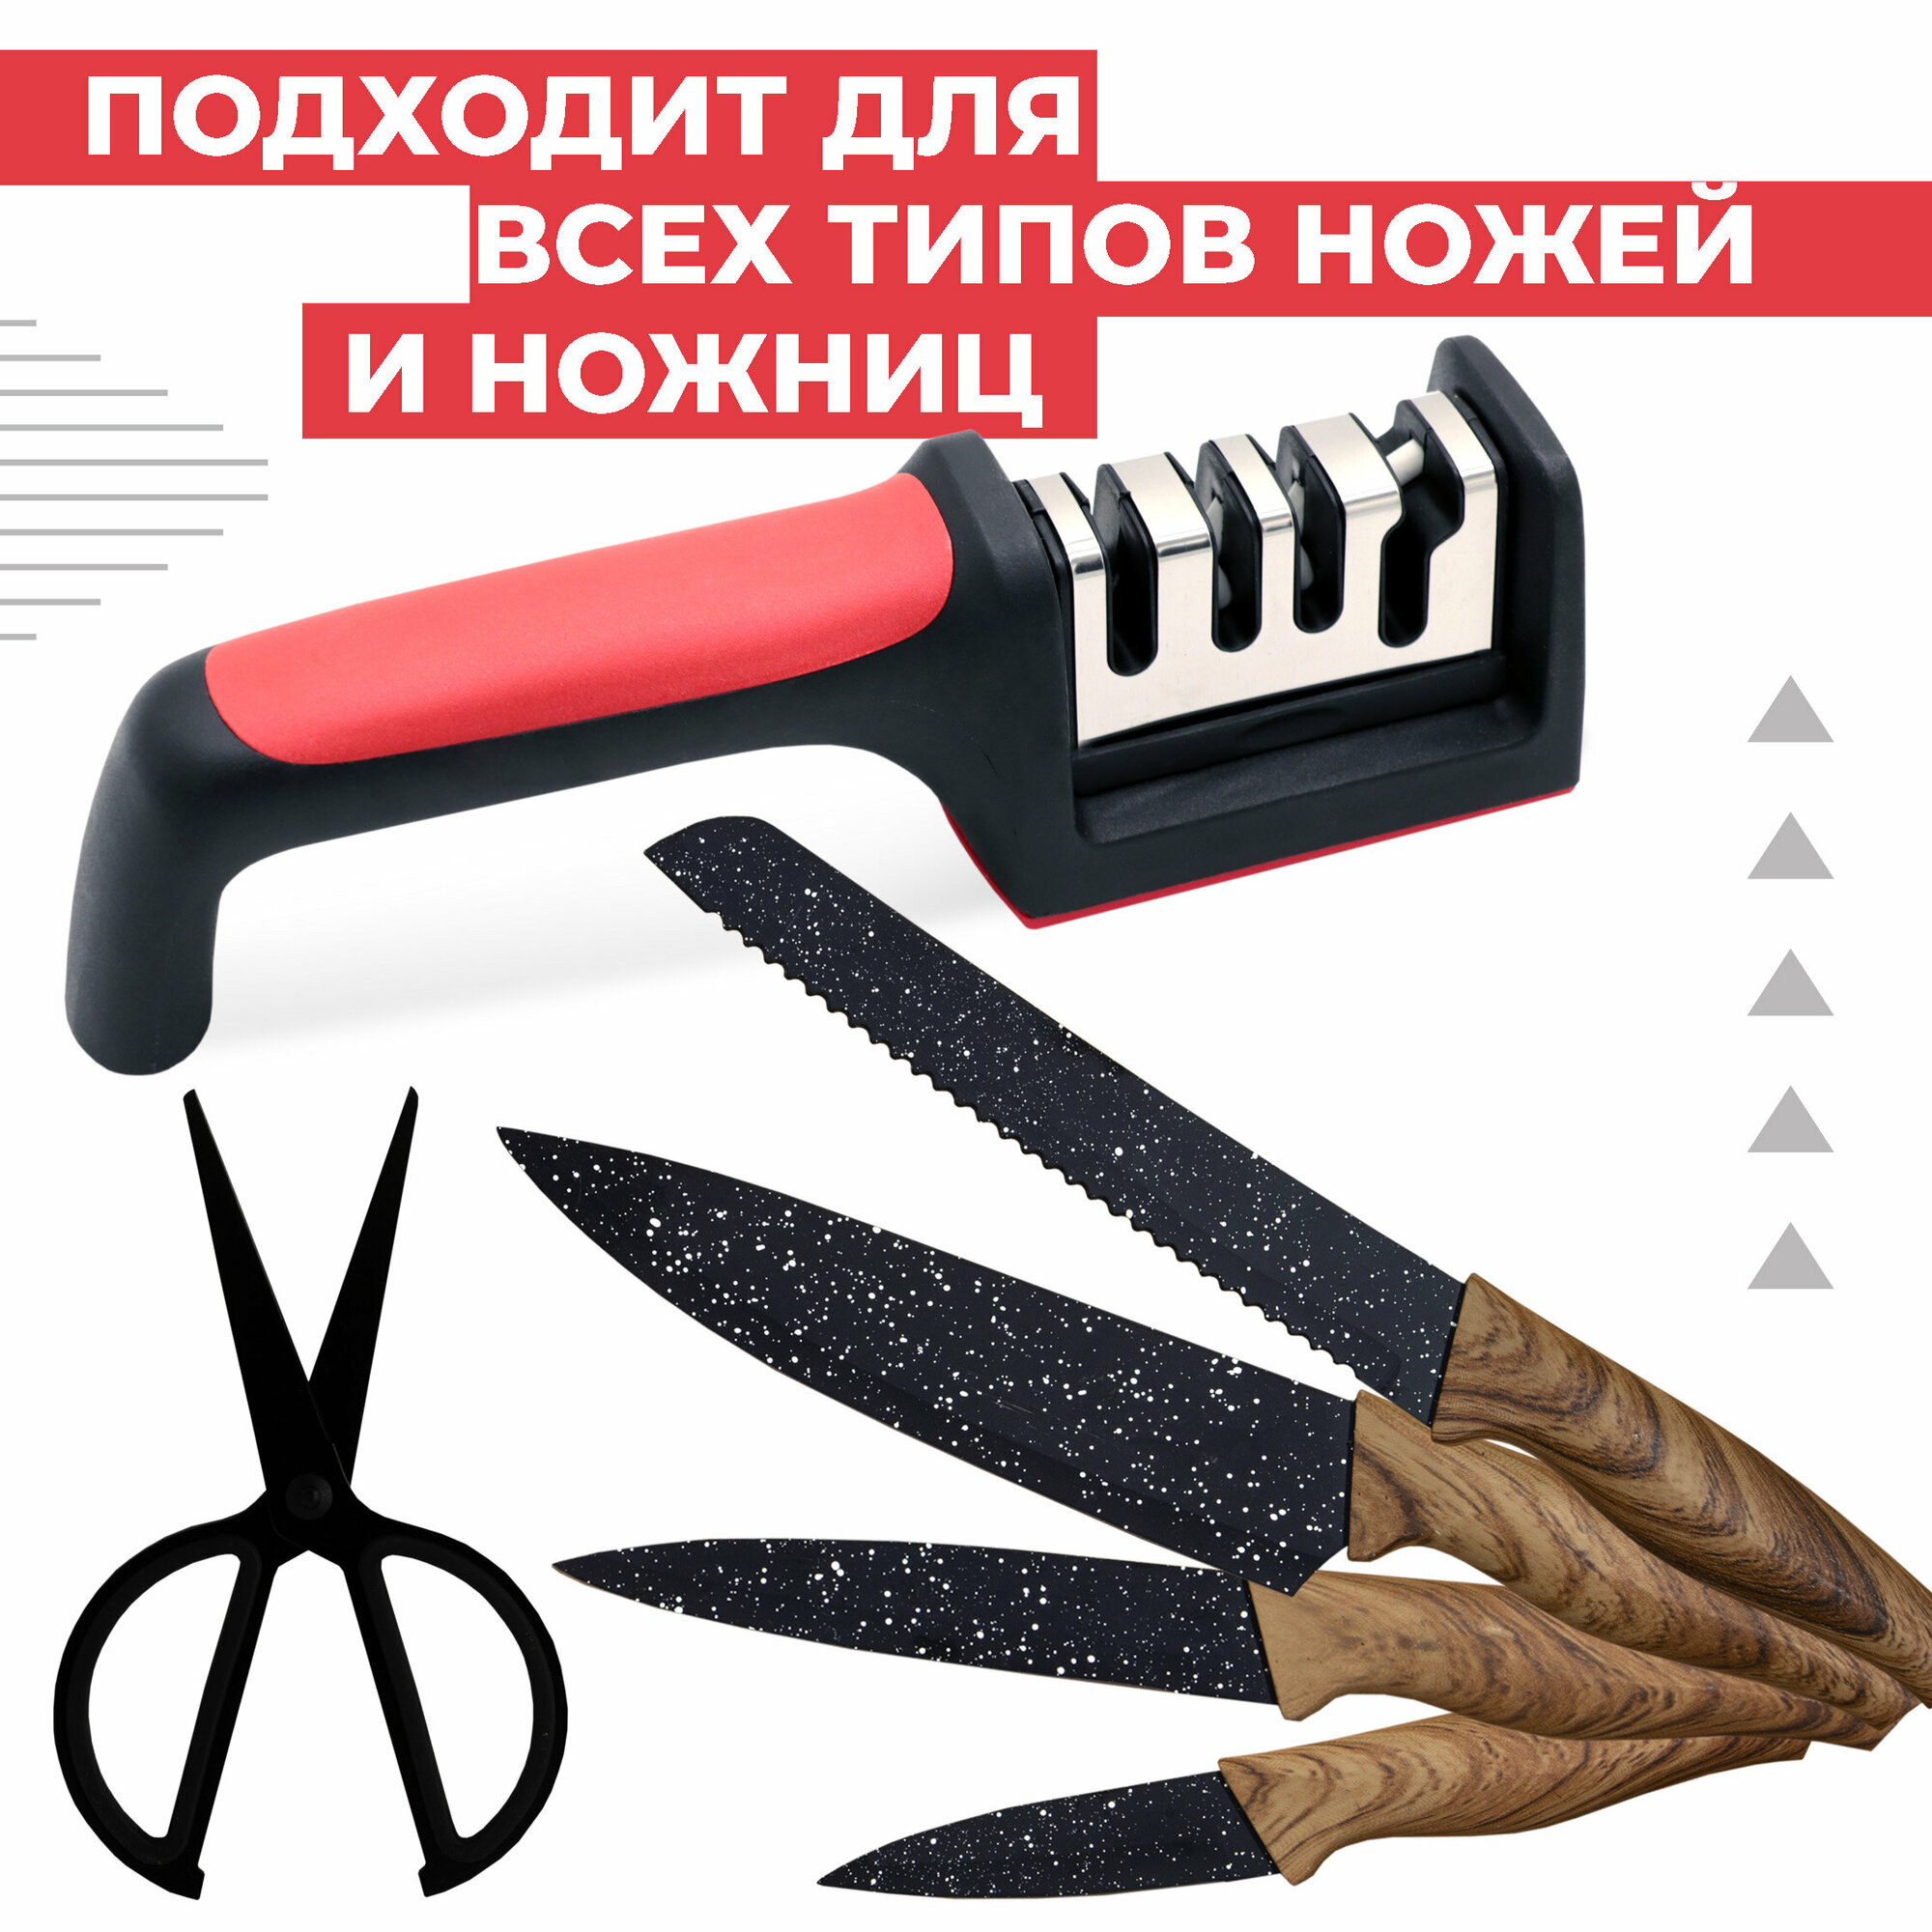 Точилка для ножей Boomshakalaka, механическая, трехэтапная, цвет черно-красный